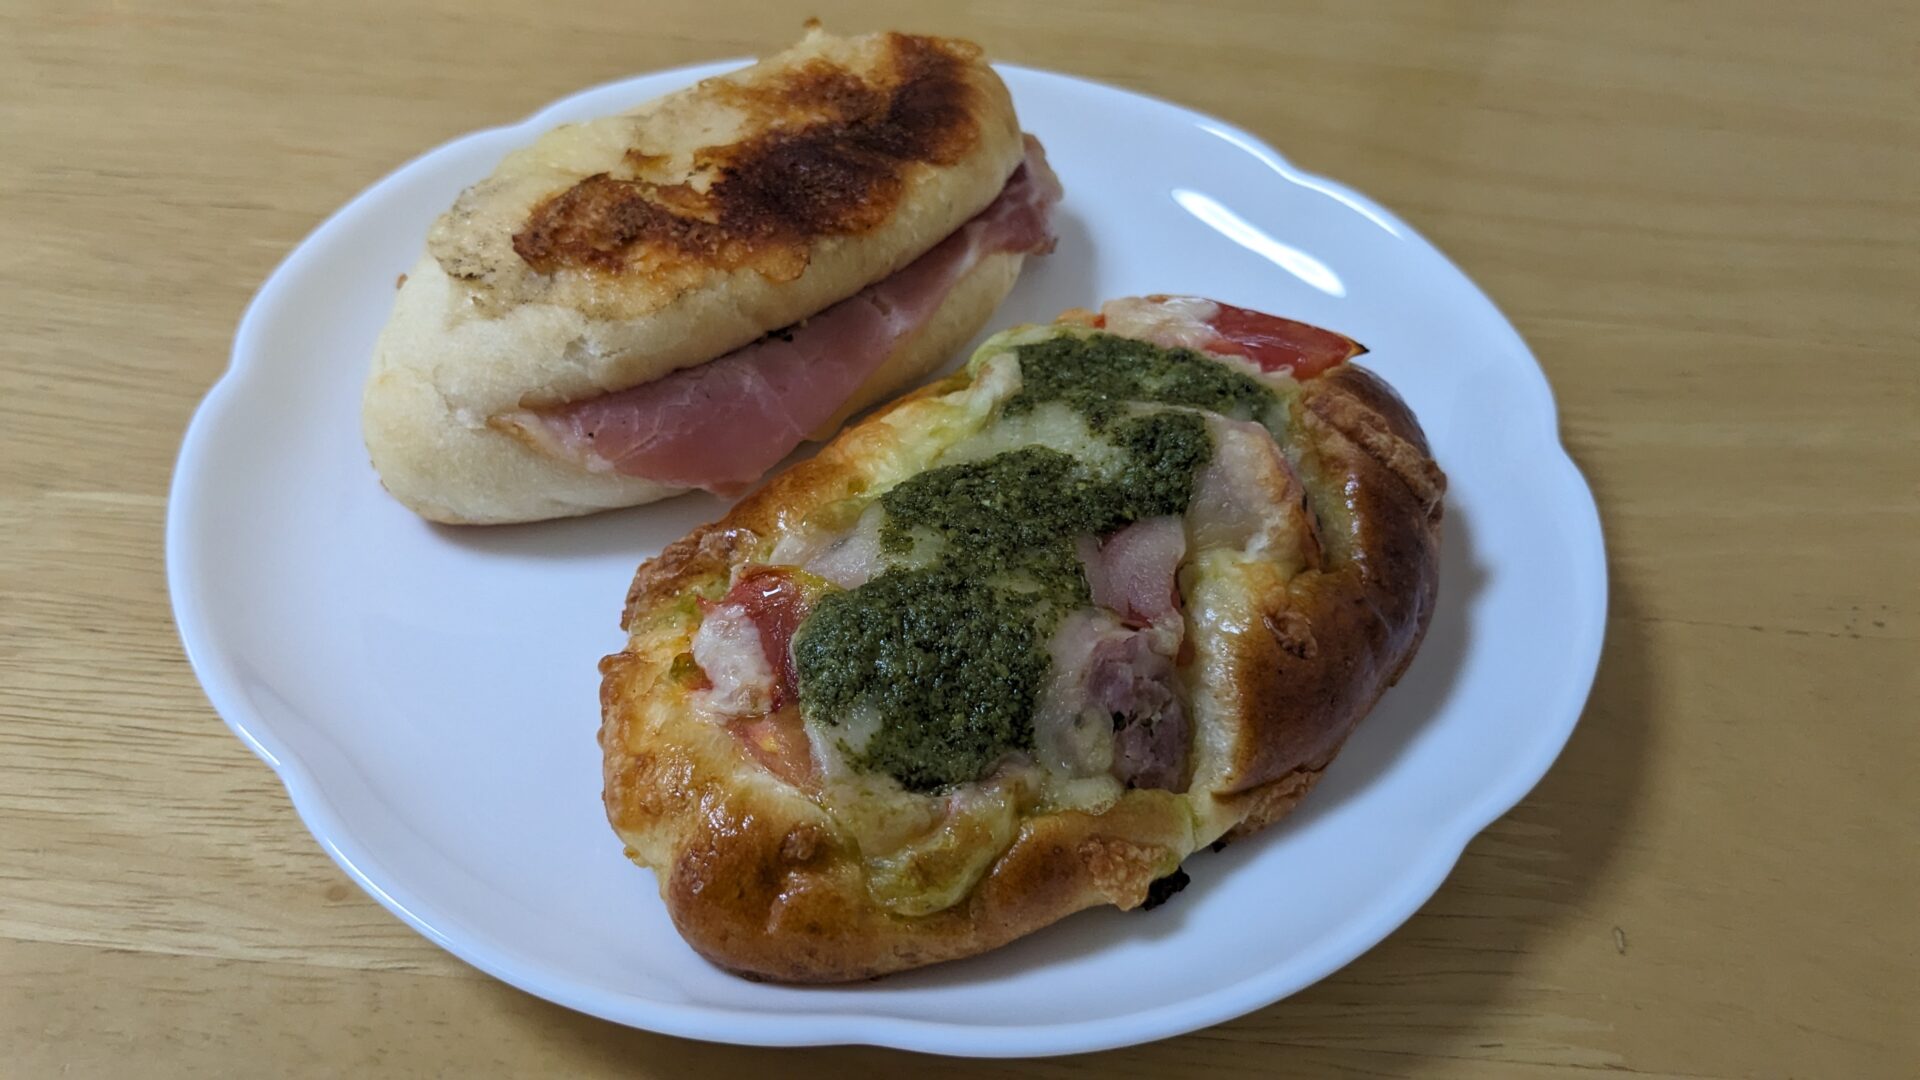 Boulangerie Tsujiokaで購入したパン